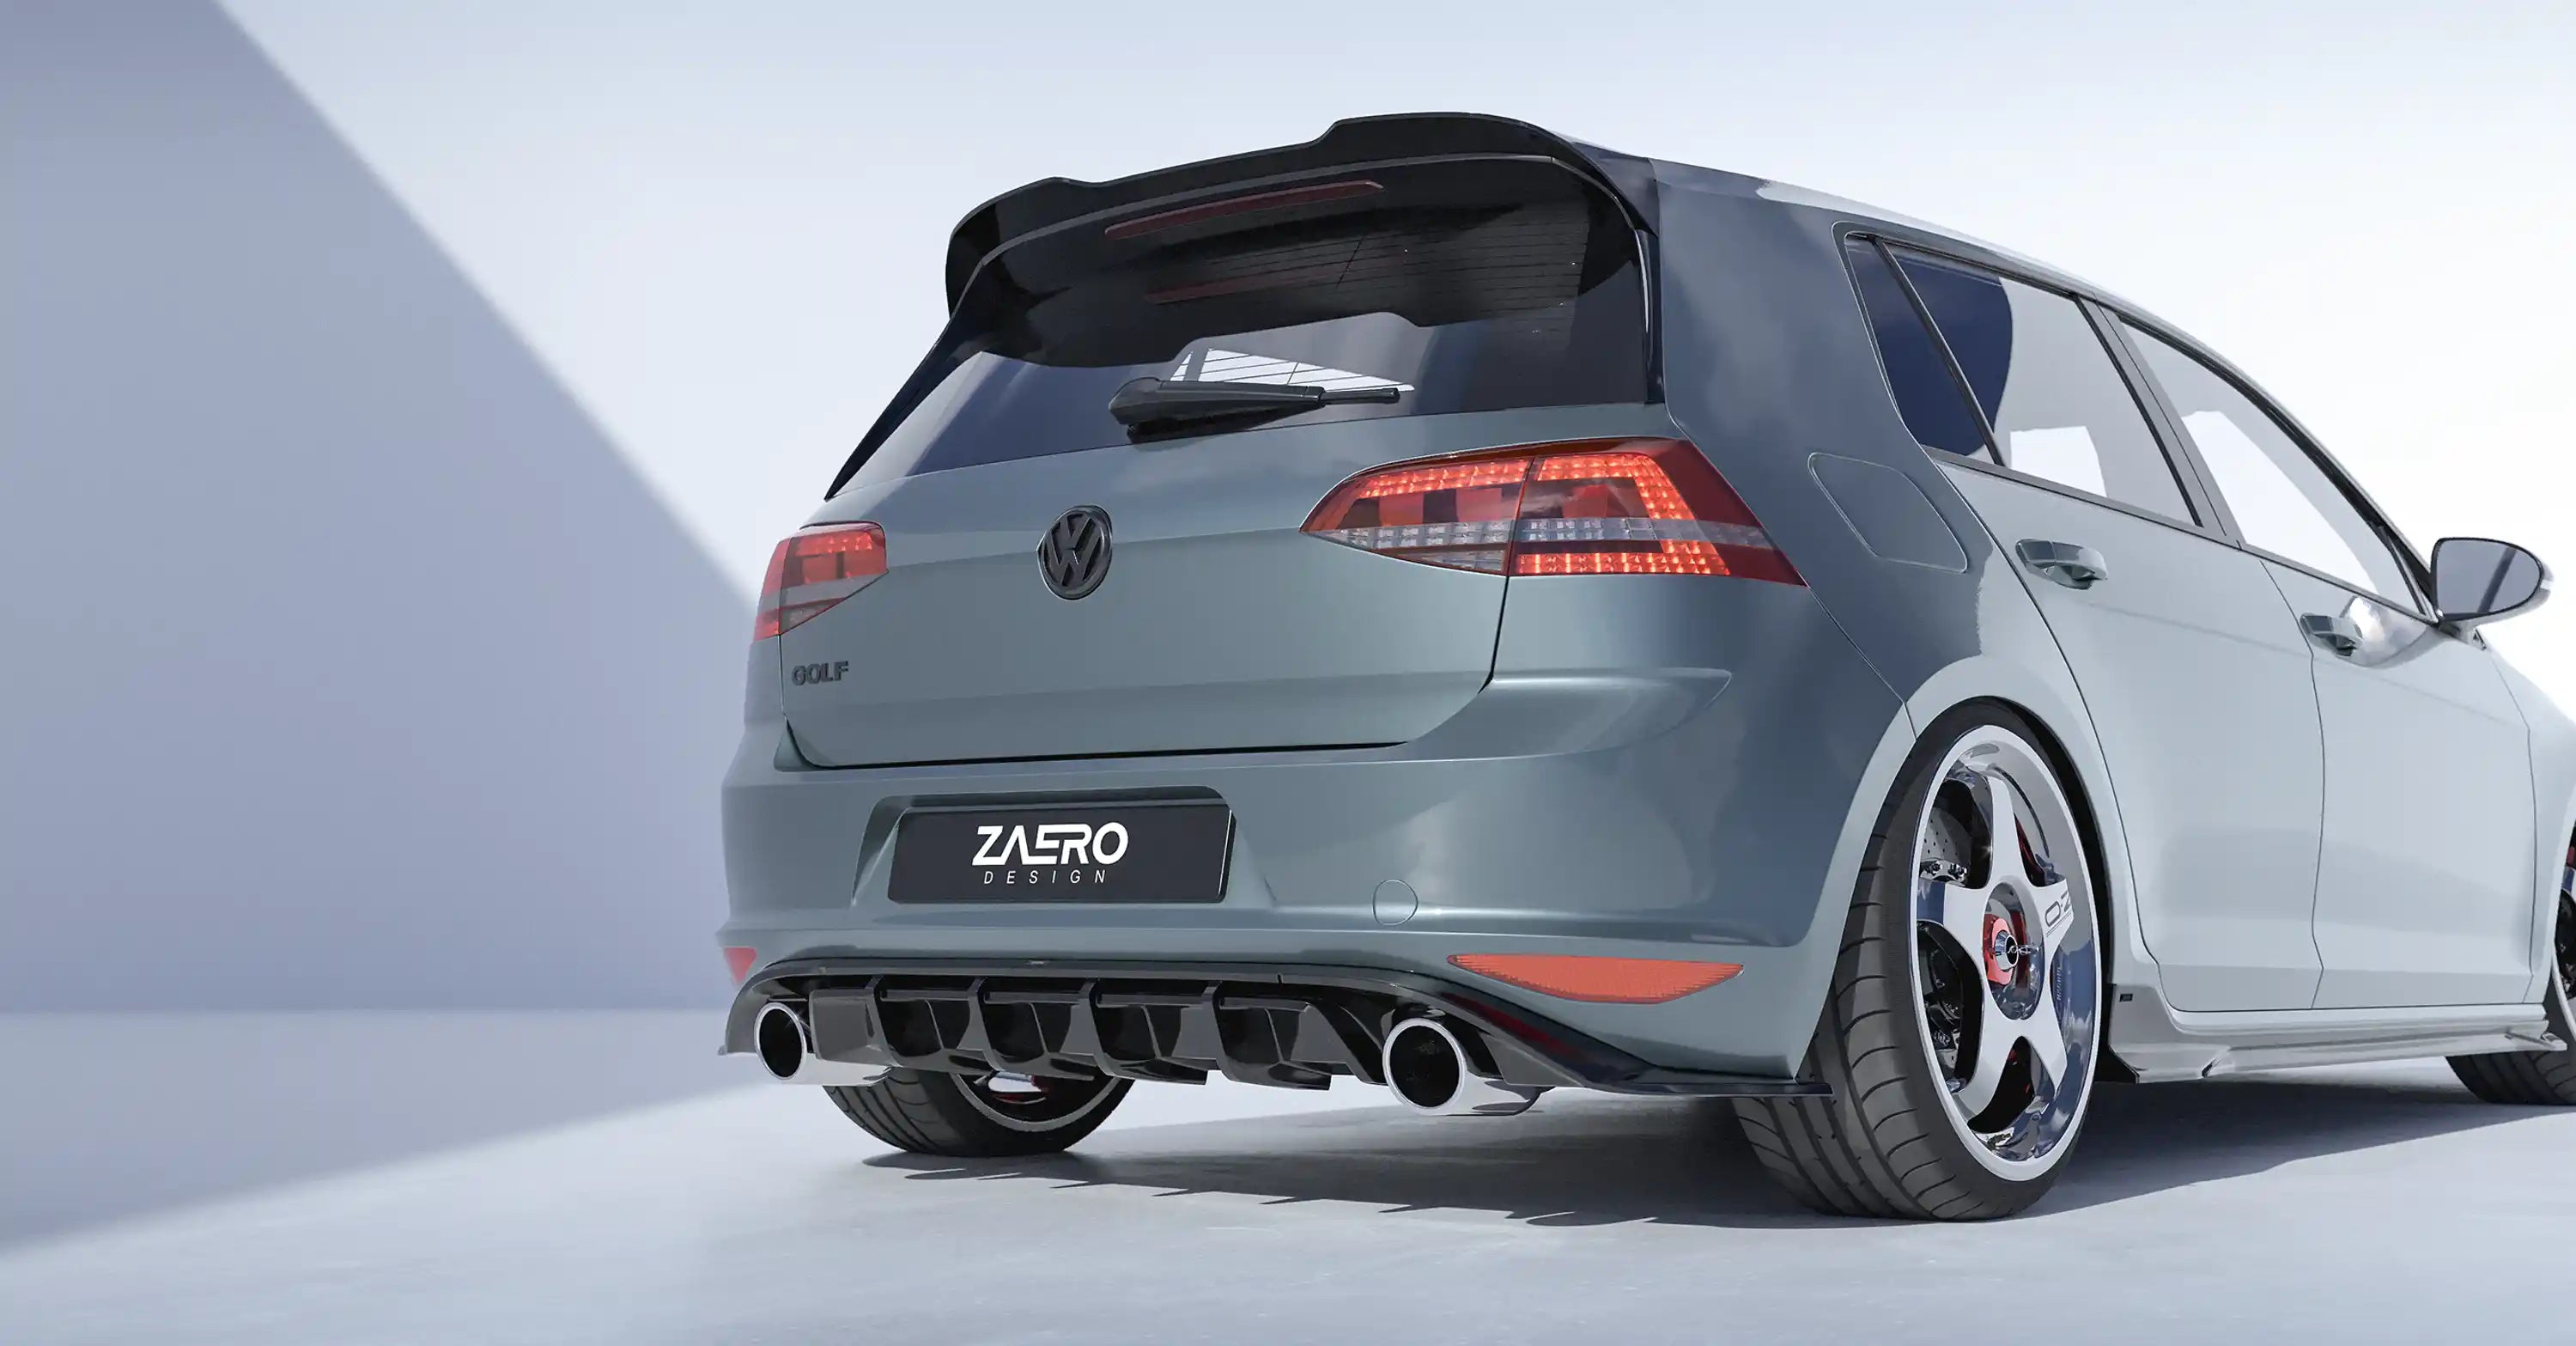 VW Golf GTI Mk7 EVO-1 Gloss Black Rear Diffuser by ZAERO (2013-2017), Rear Diffusers, Zaero Design - AUTOID | Premium Automotive Accessories